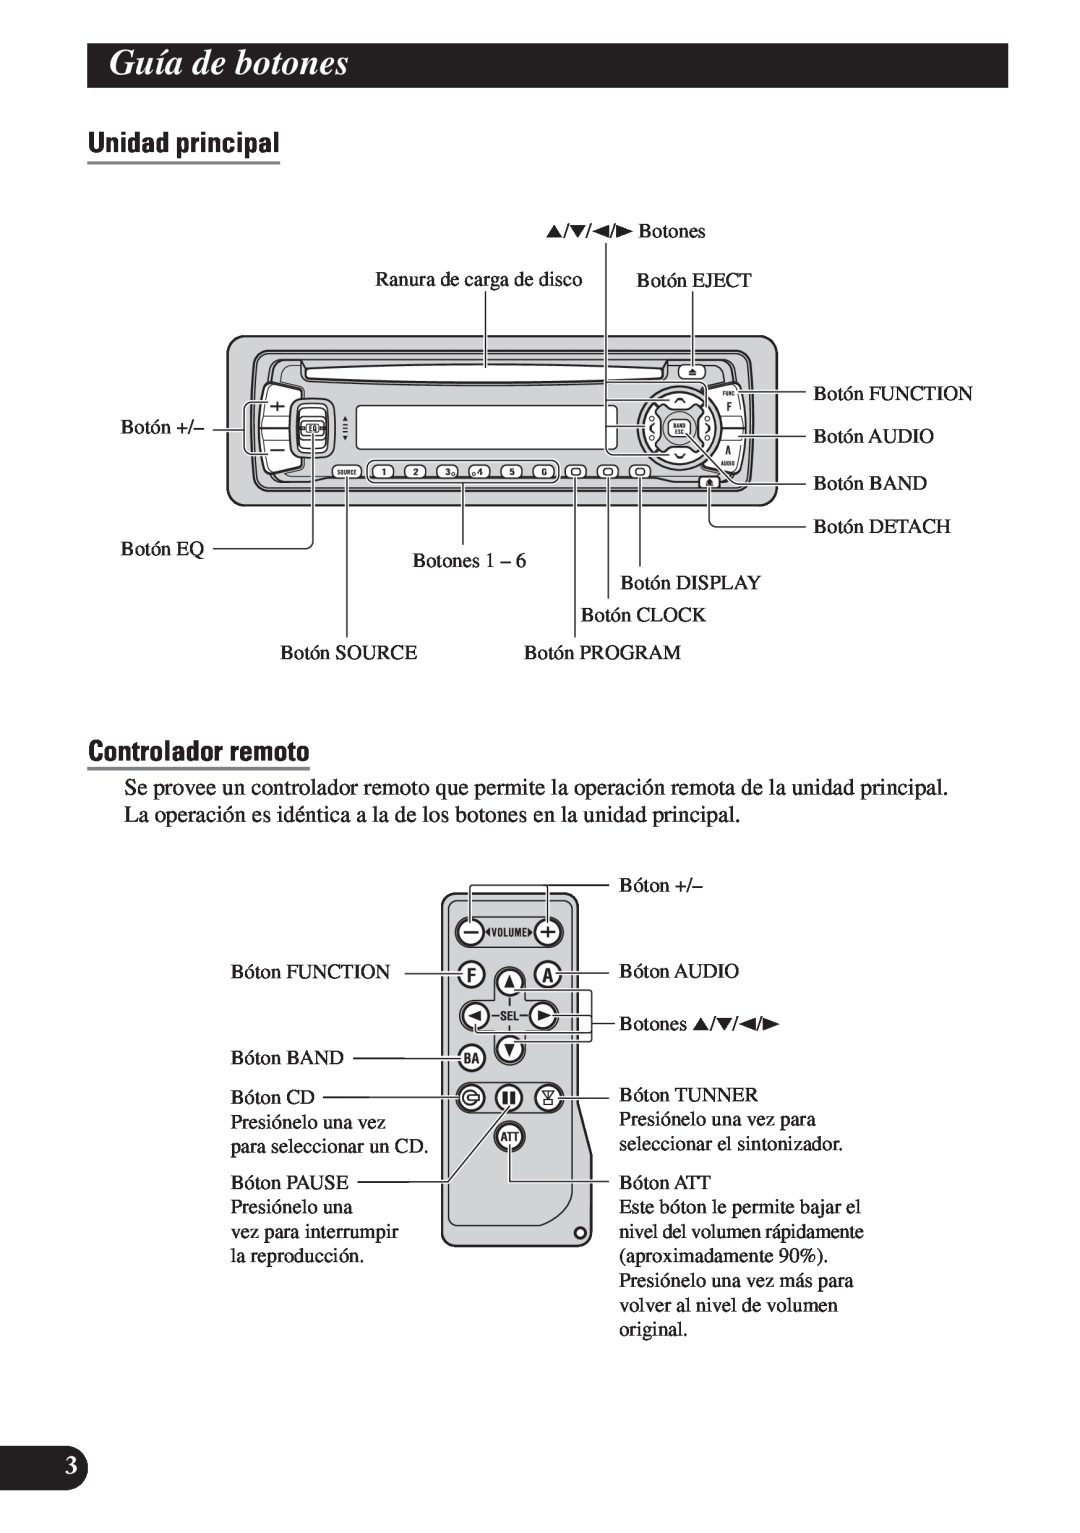 Pioneer DEH-P4150 operation manual Guía de botones, Unidad principal, Controlador remoto 